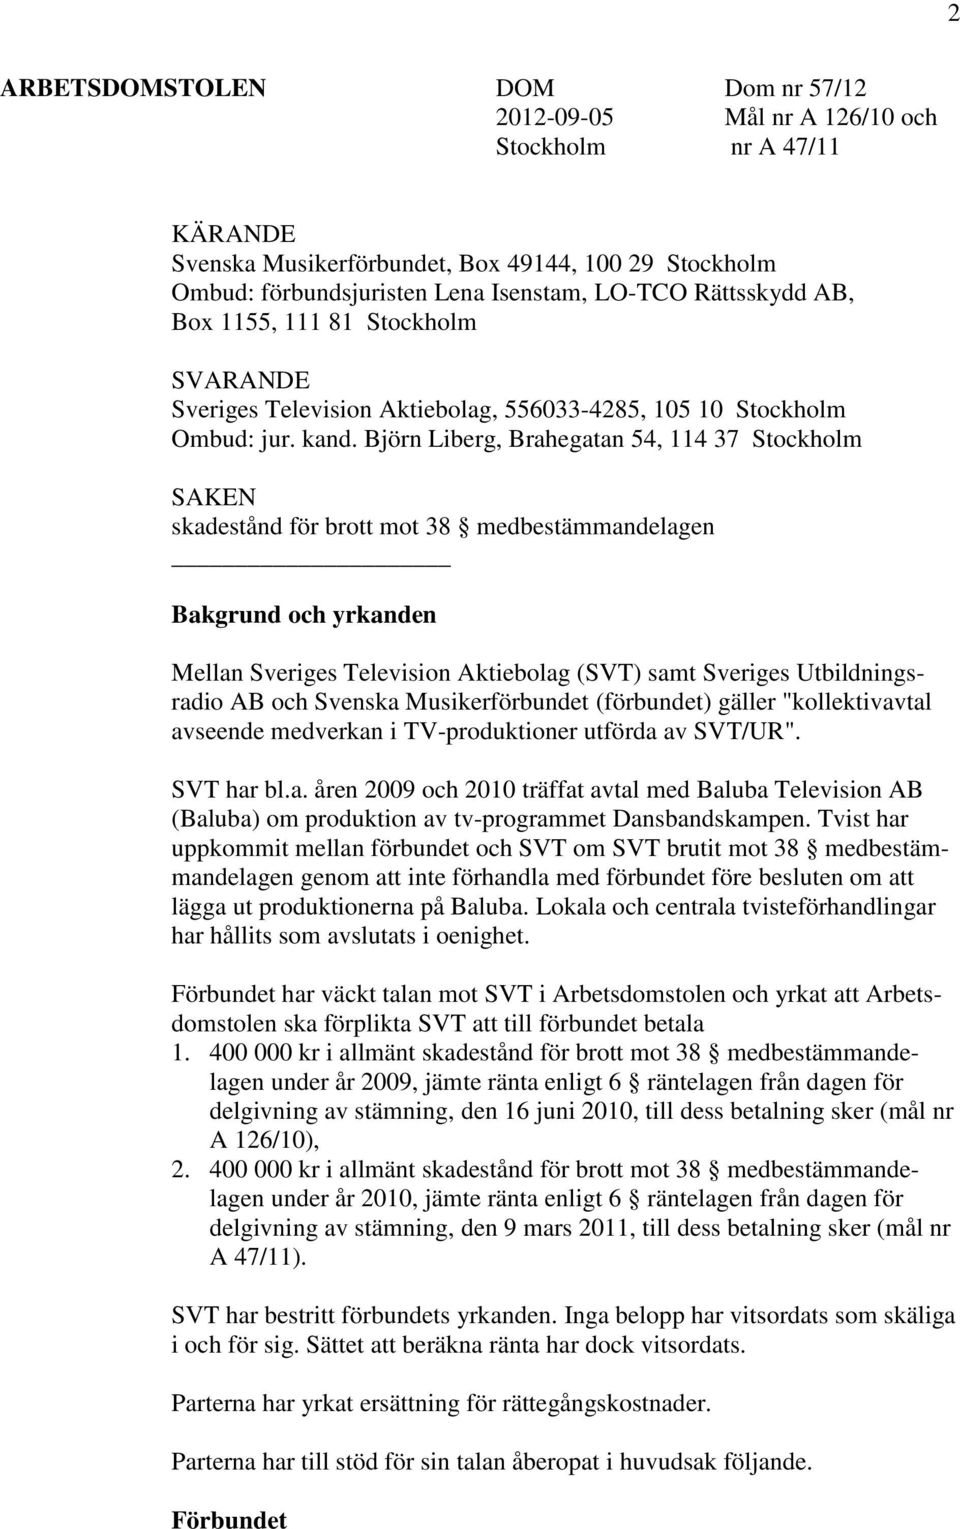 Björn Liberg, Brahegatan 54, 114 37 Stockholm SAKEN skadestånd för brott mot 38 medbestämmandelagen Bakgrund och yrkanden Mellan Sveriges Television Aktiebolag (SVT) samt Sveriges Utbildningsradio AB